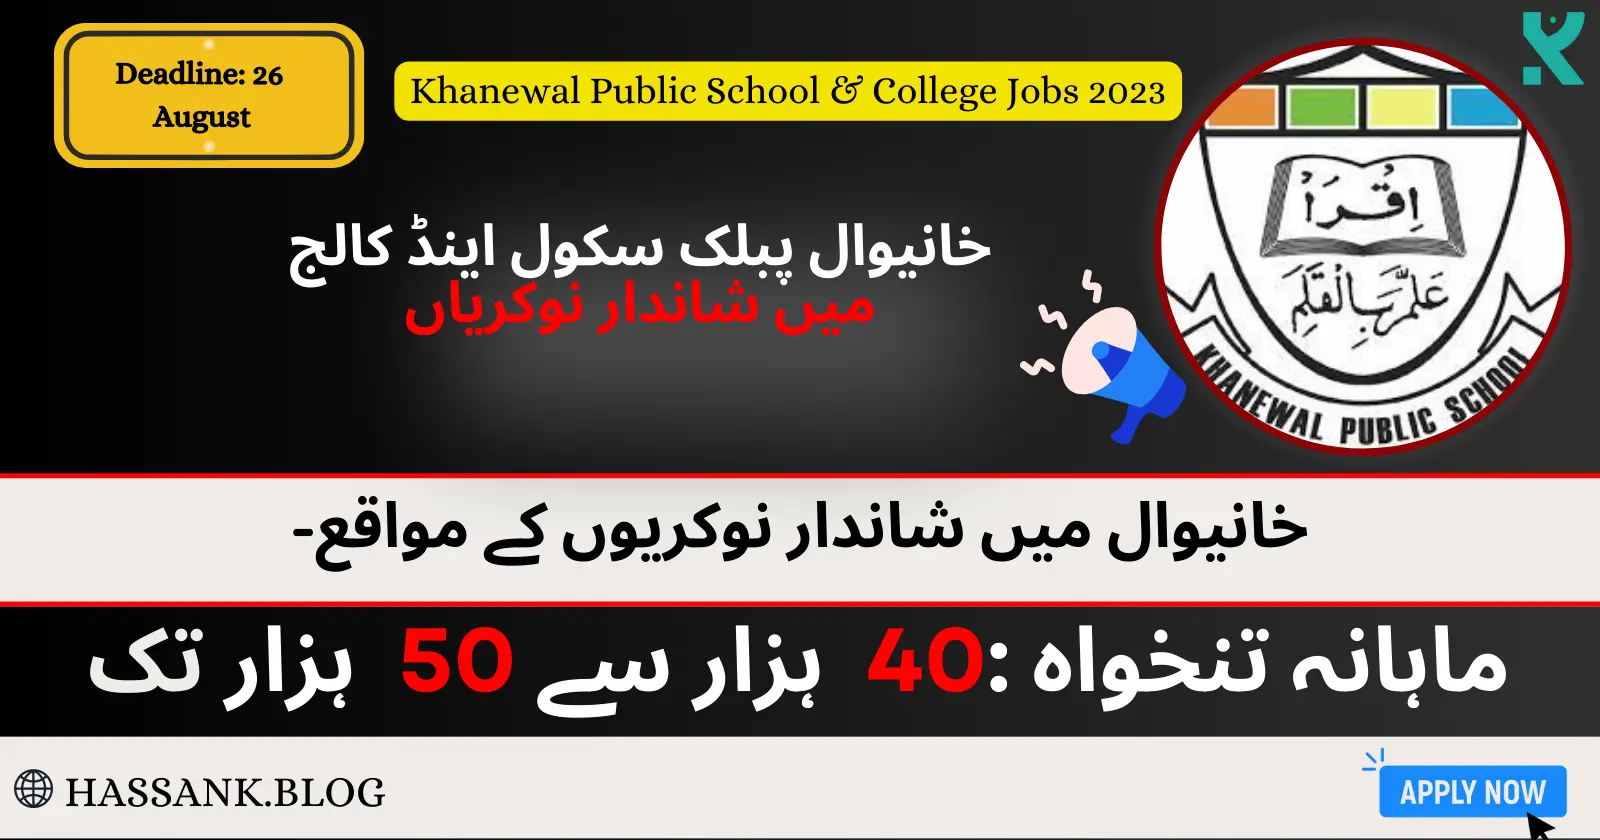 Khanewal Public School & College